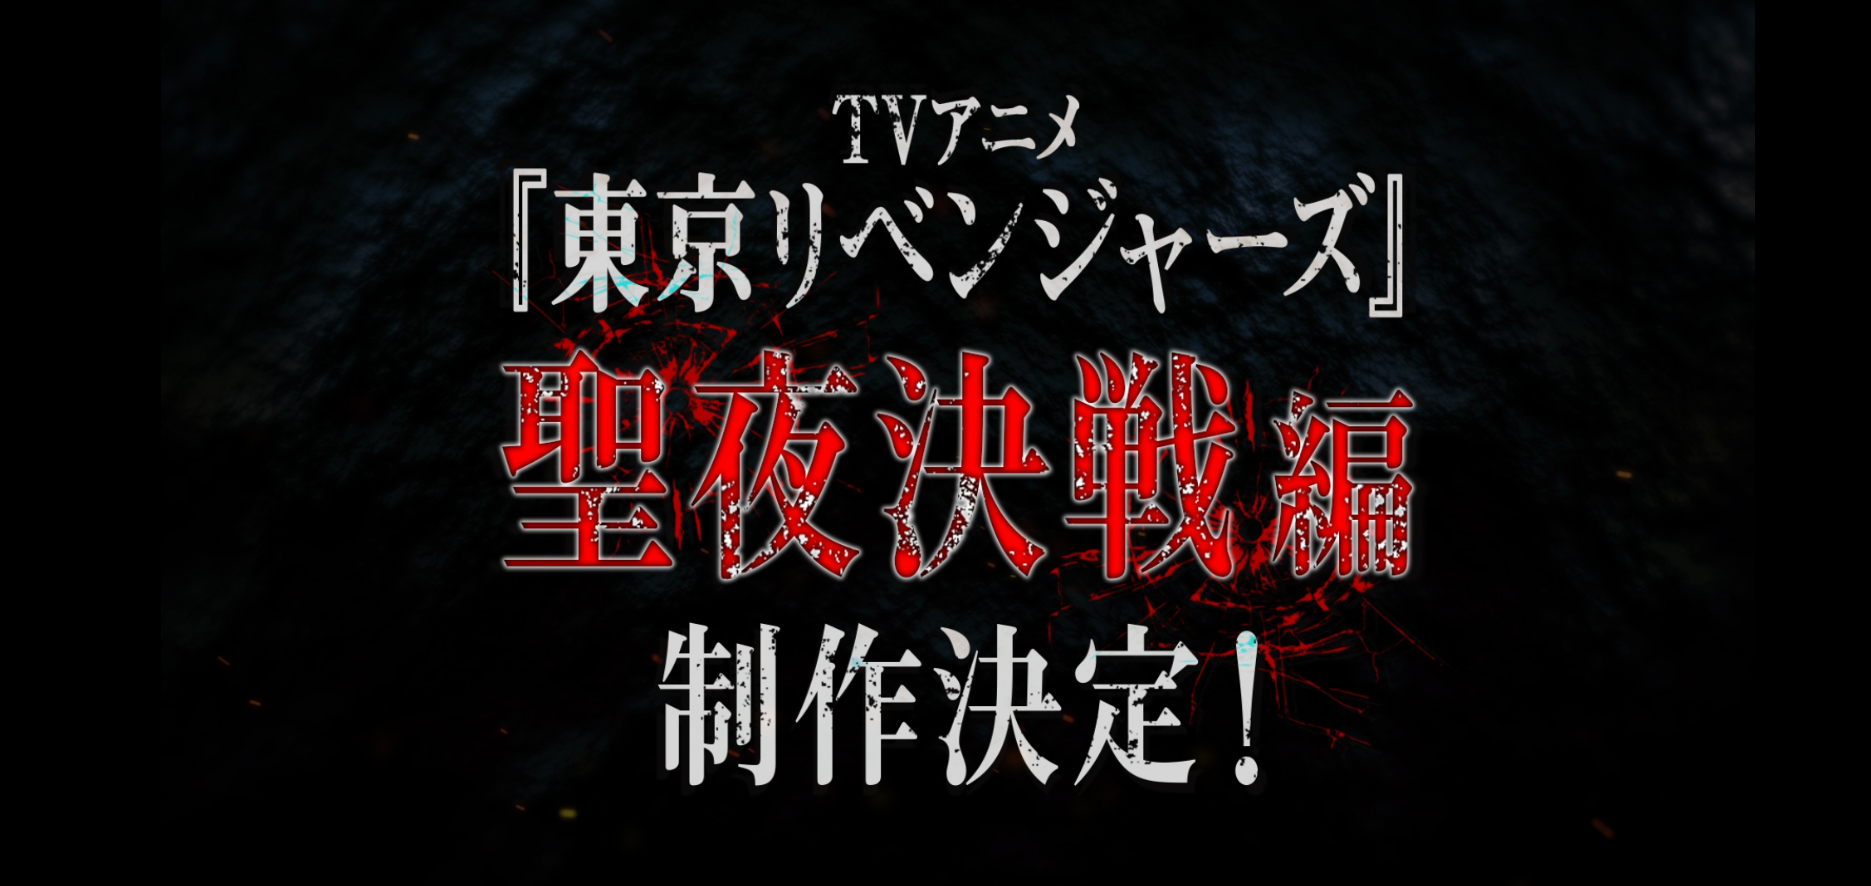 Tokyo Revengers anuncia su temporada 2 de anime: Christmas Showdown